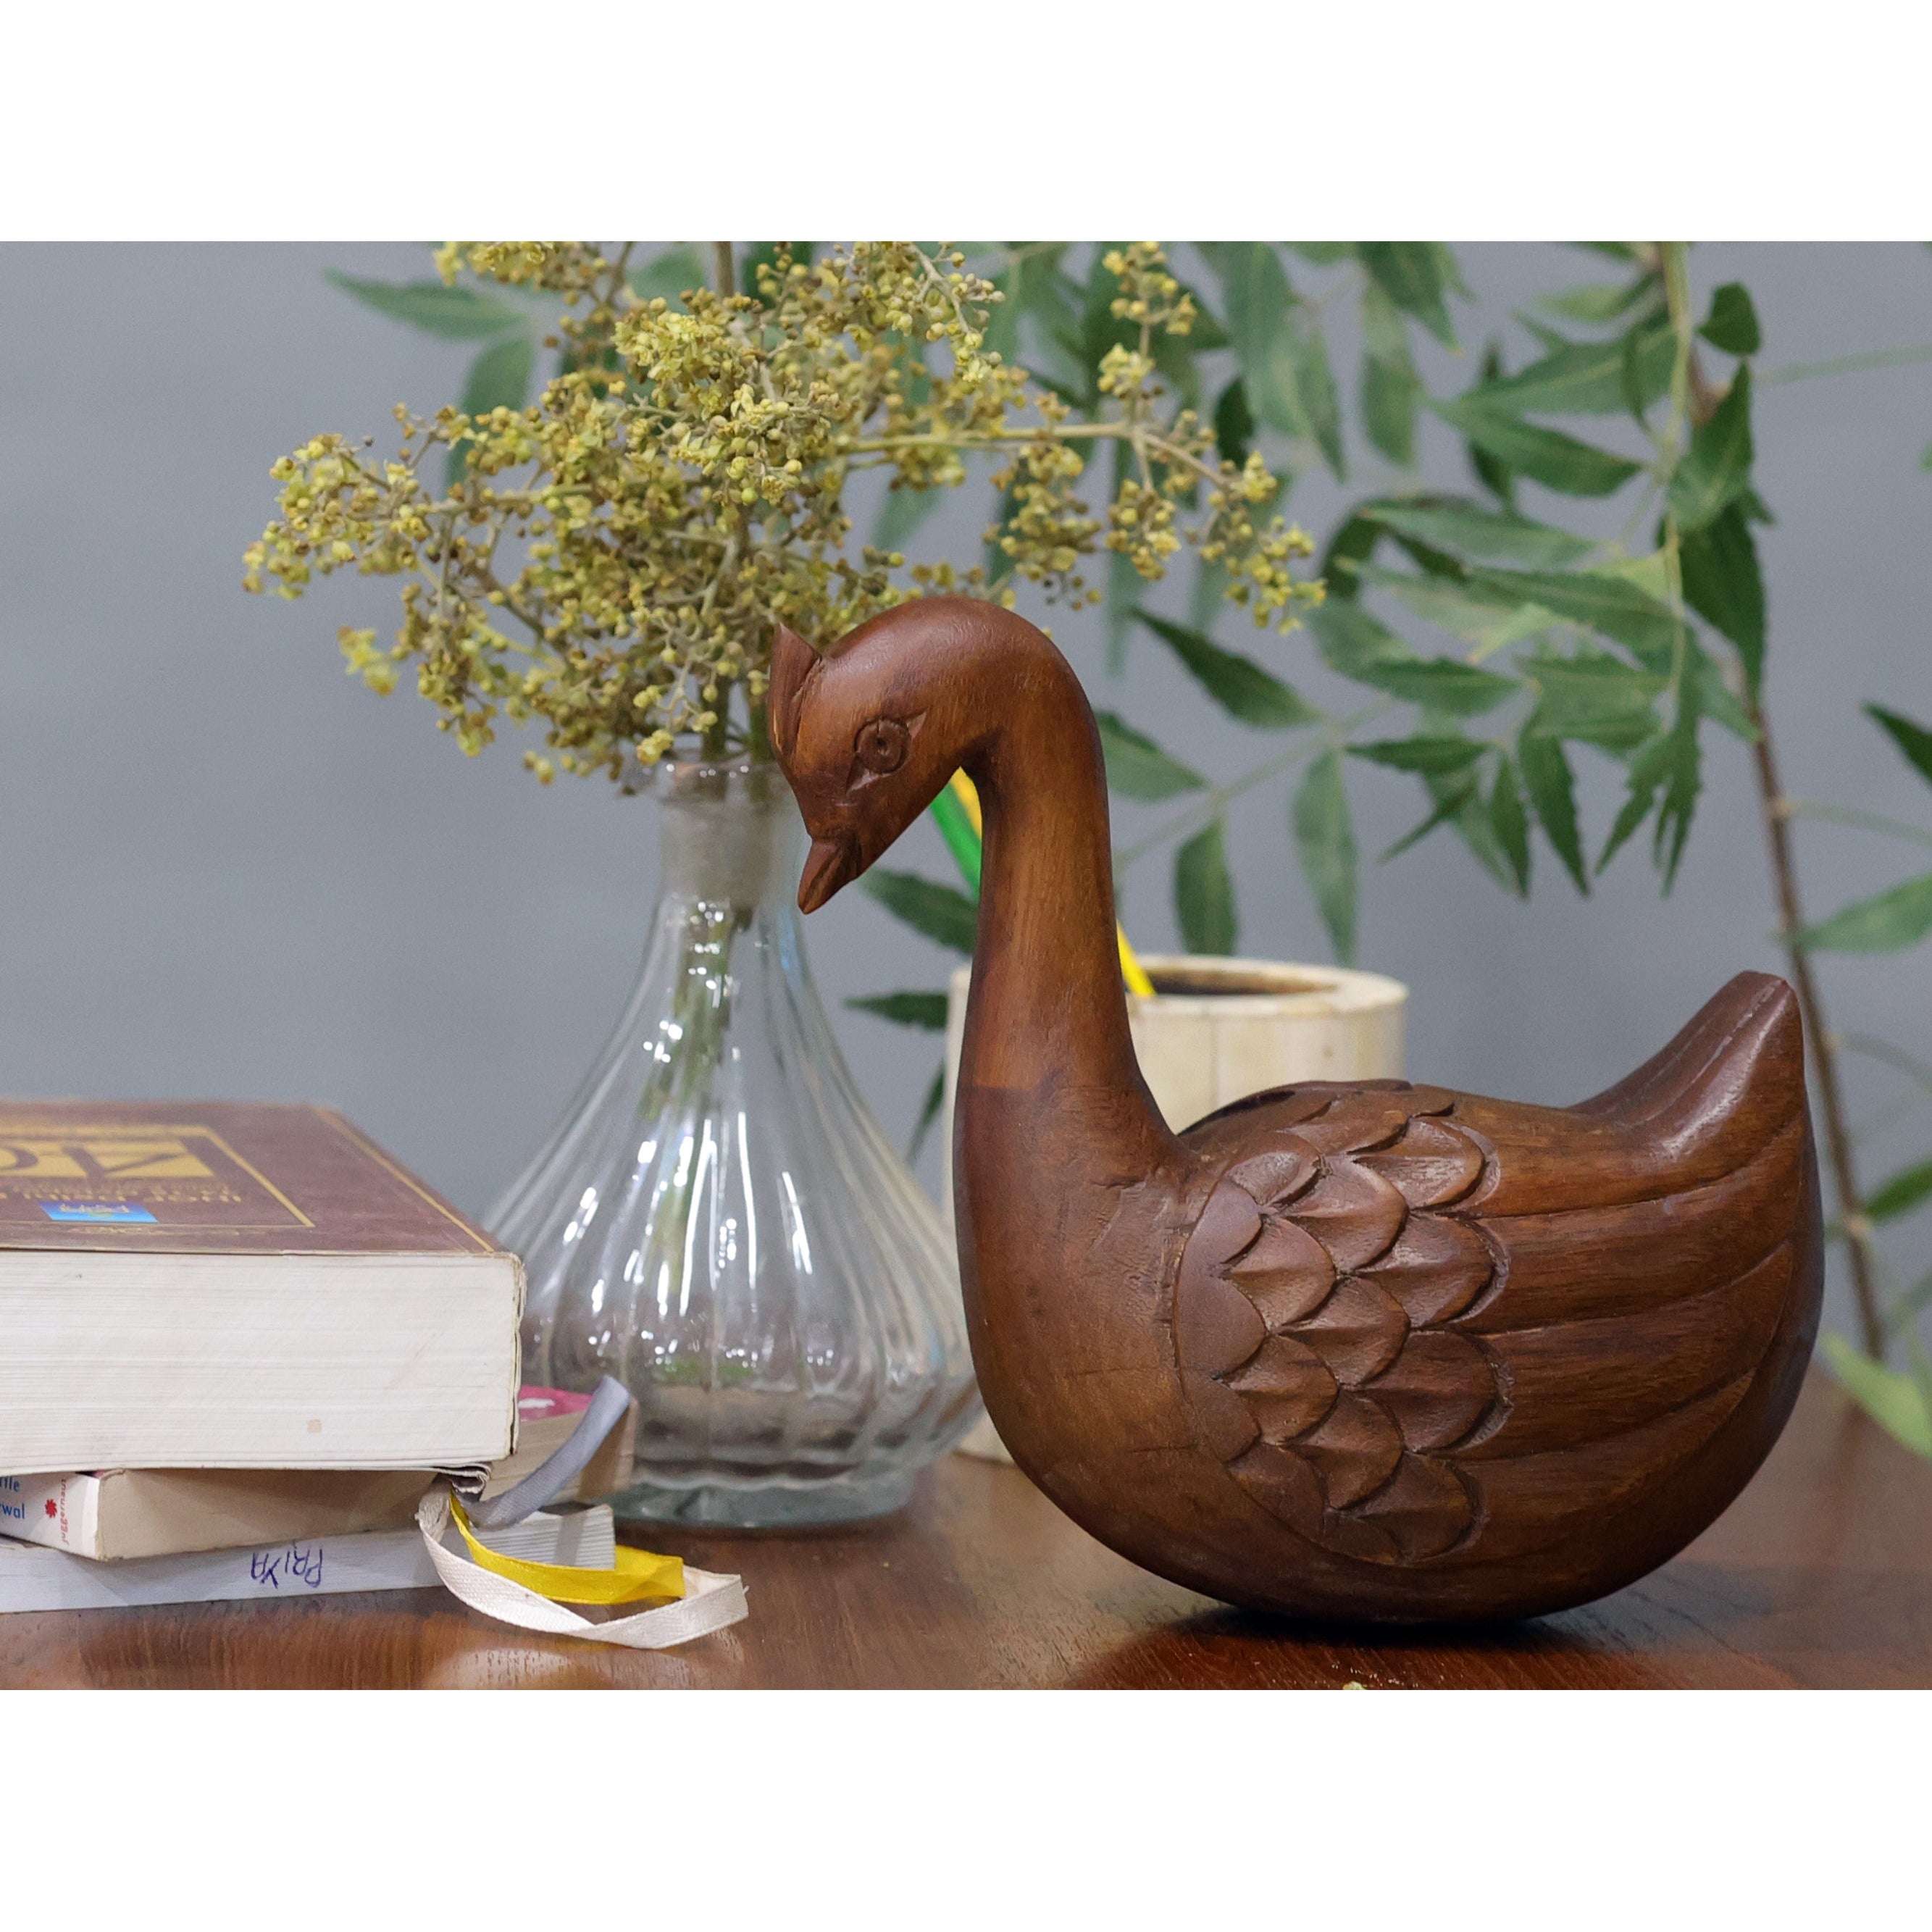 Wooden Baby Swan Showpiece Animal Figurine